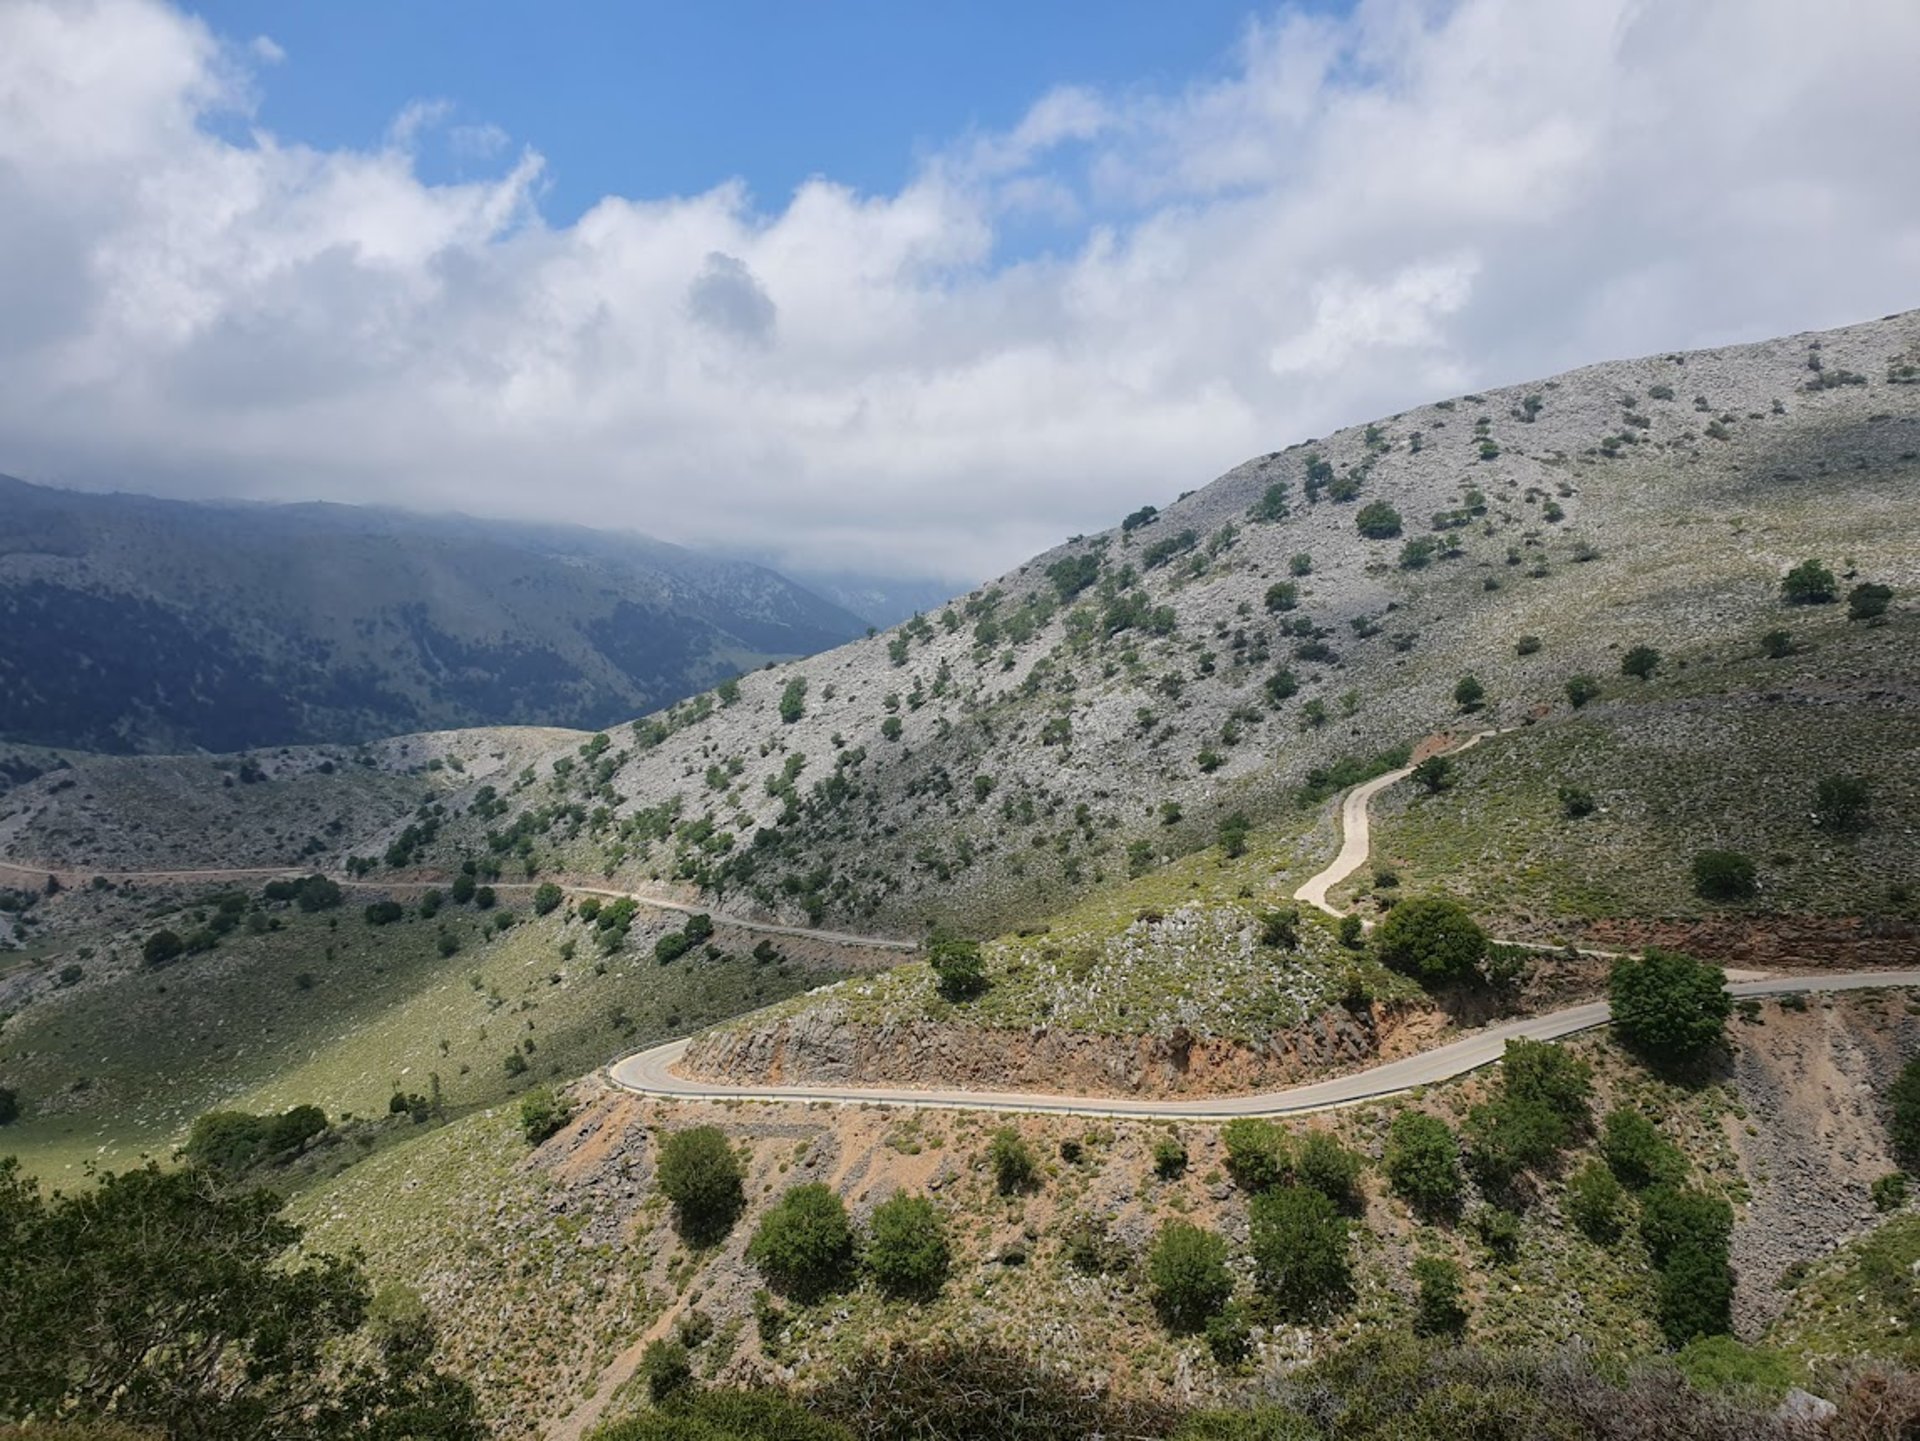 The Tour of Crete